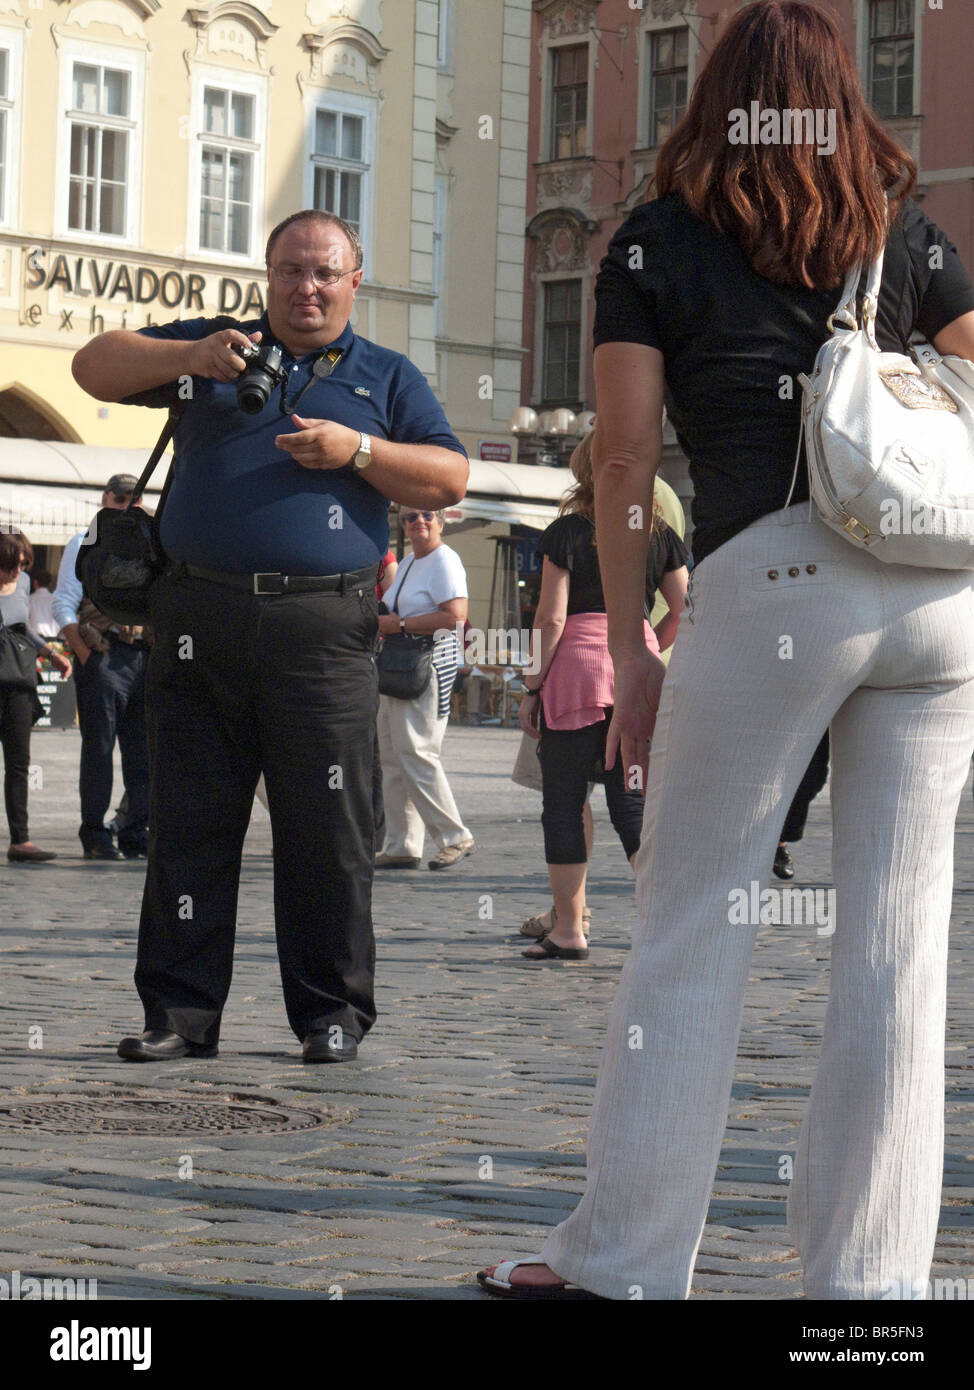 Big man taking photo of girl in Prague. Stock Photo